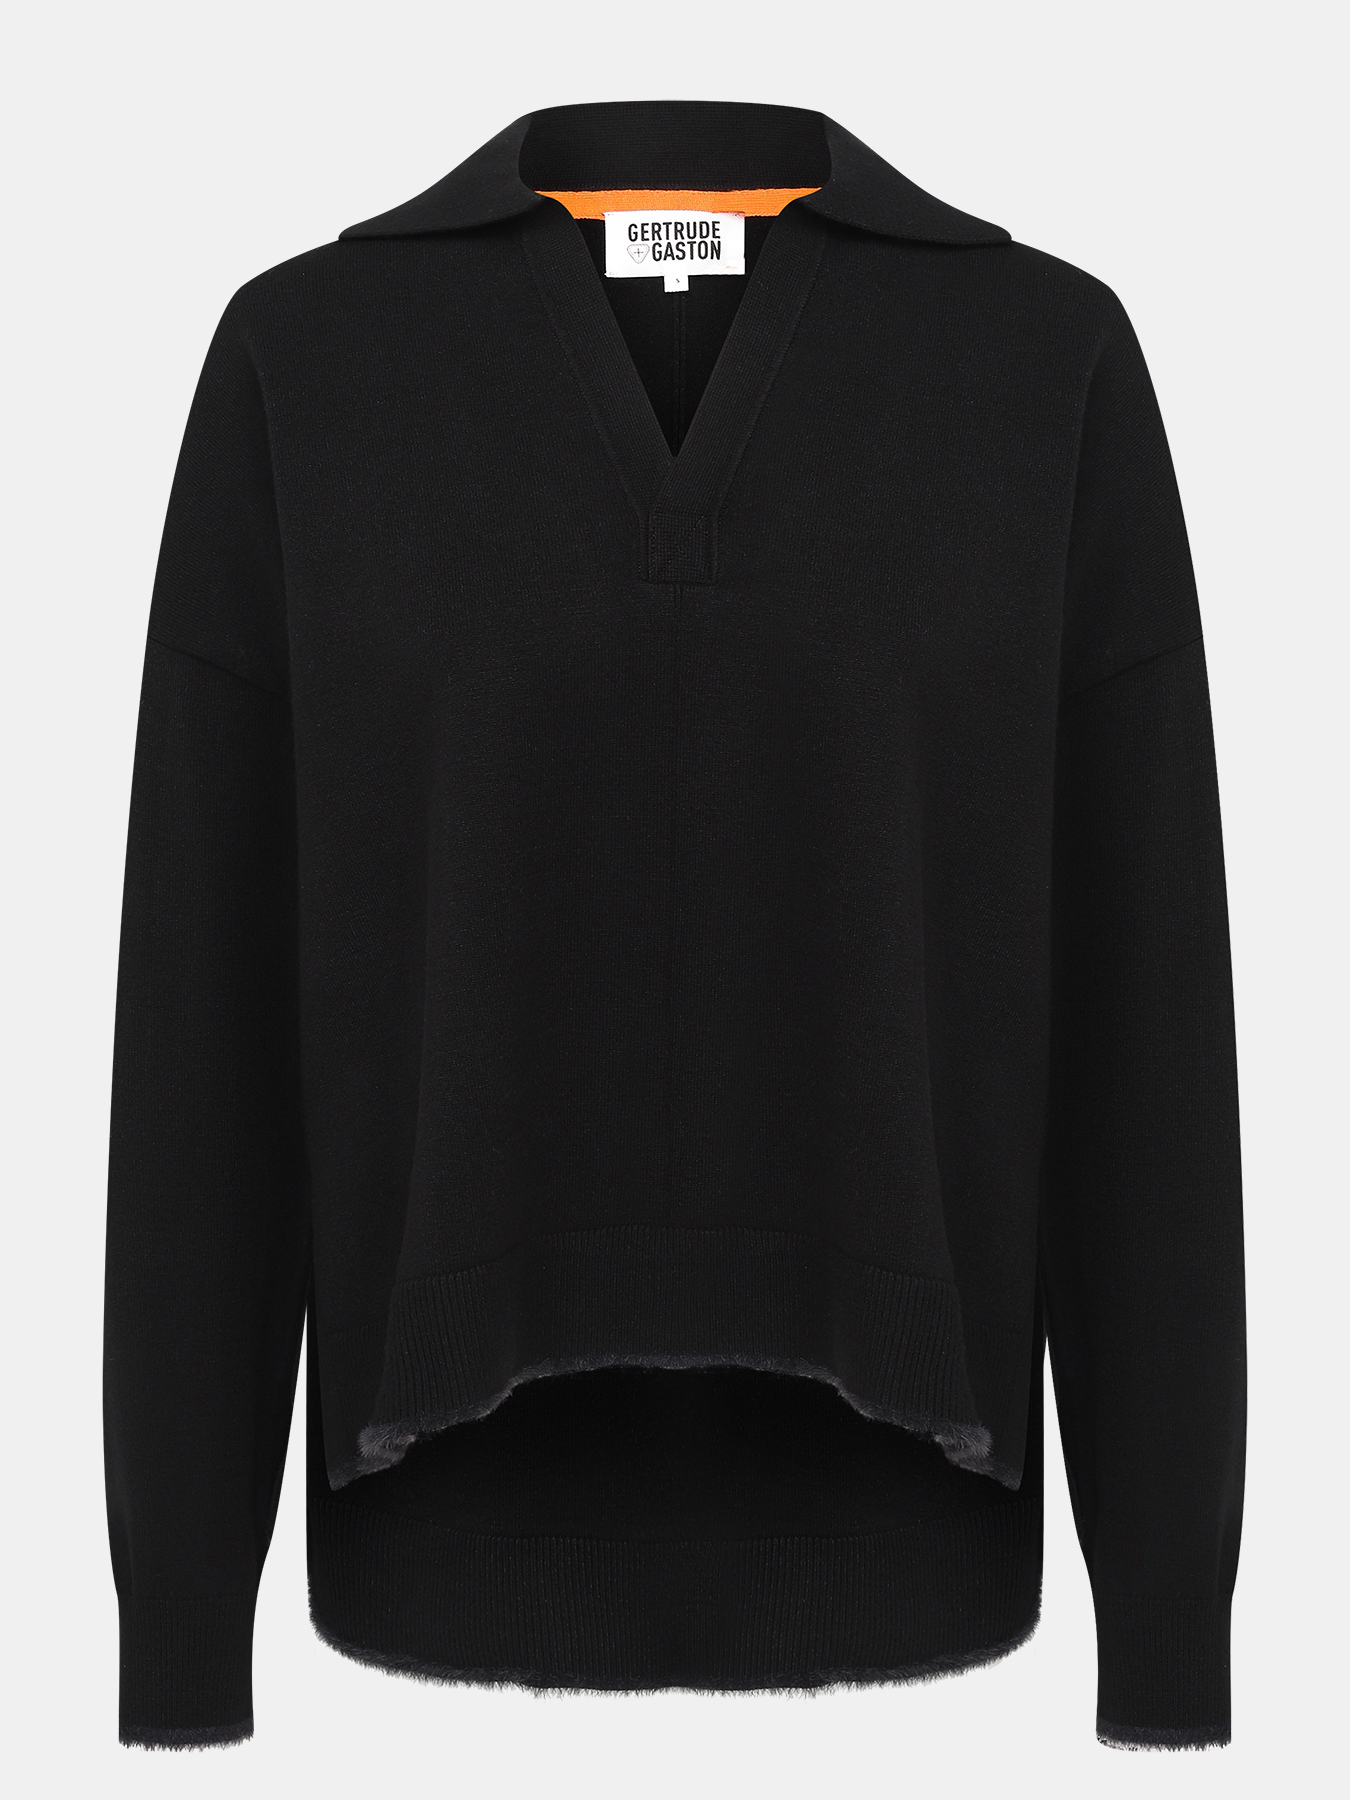 Пуловер Gertrude+Gaston 429302-044, цвет черный, размер 46-48